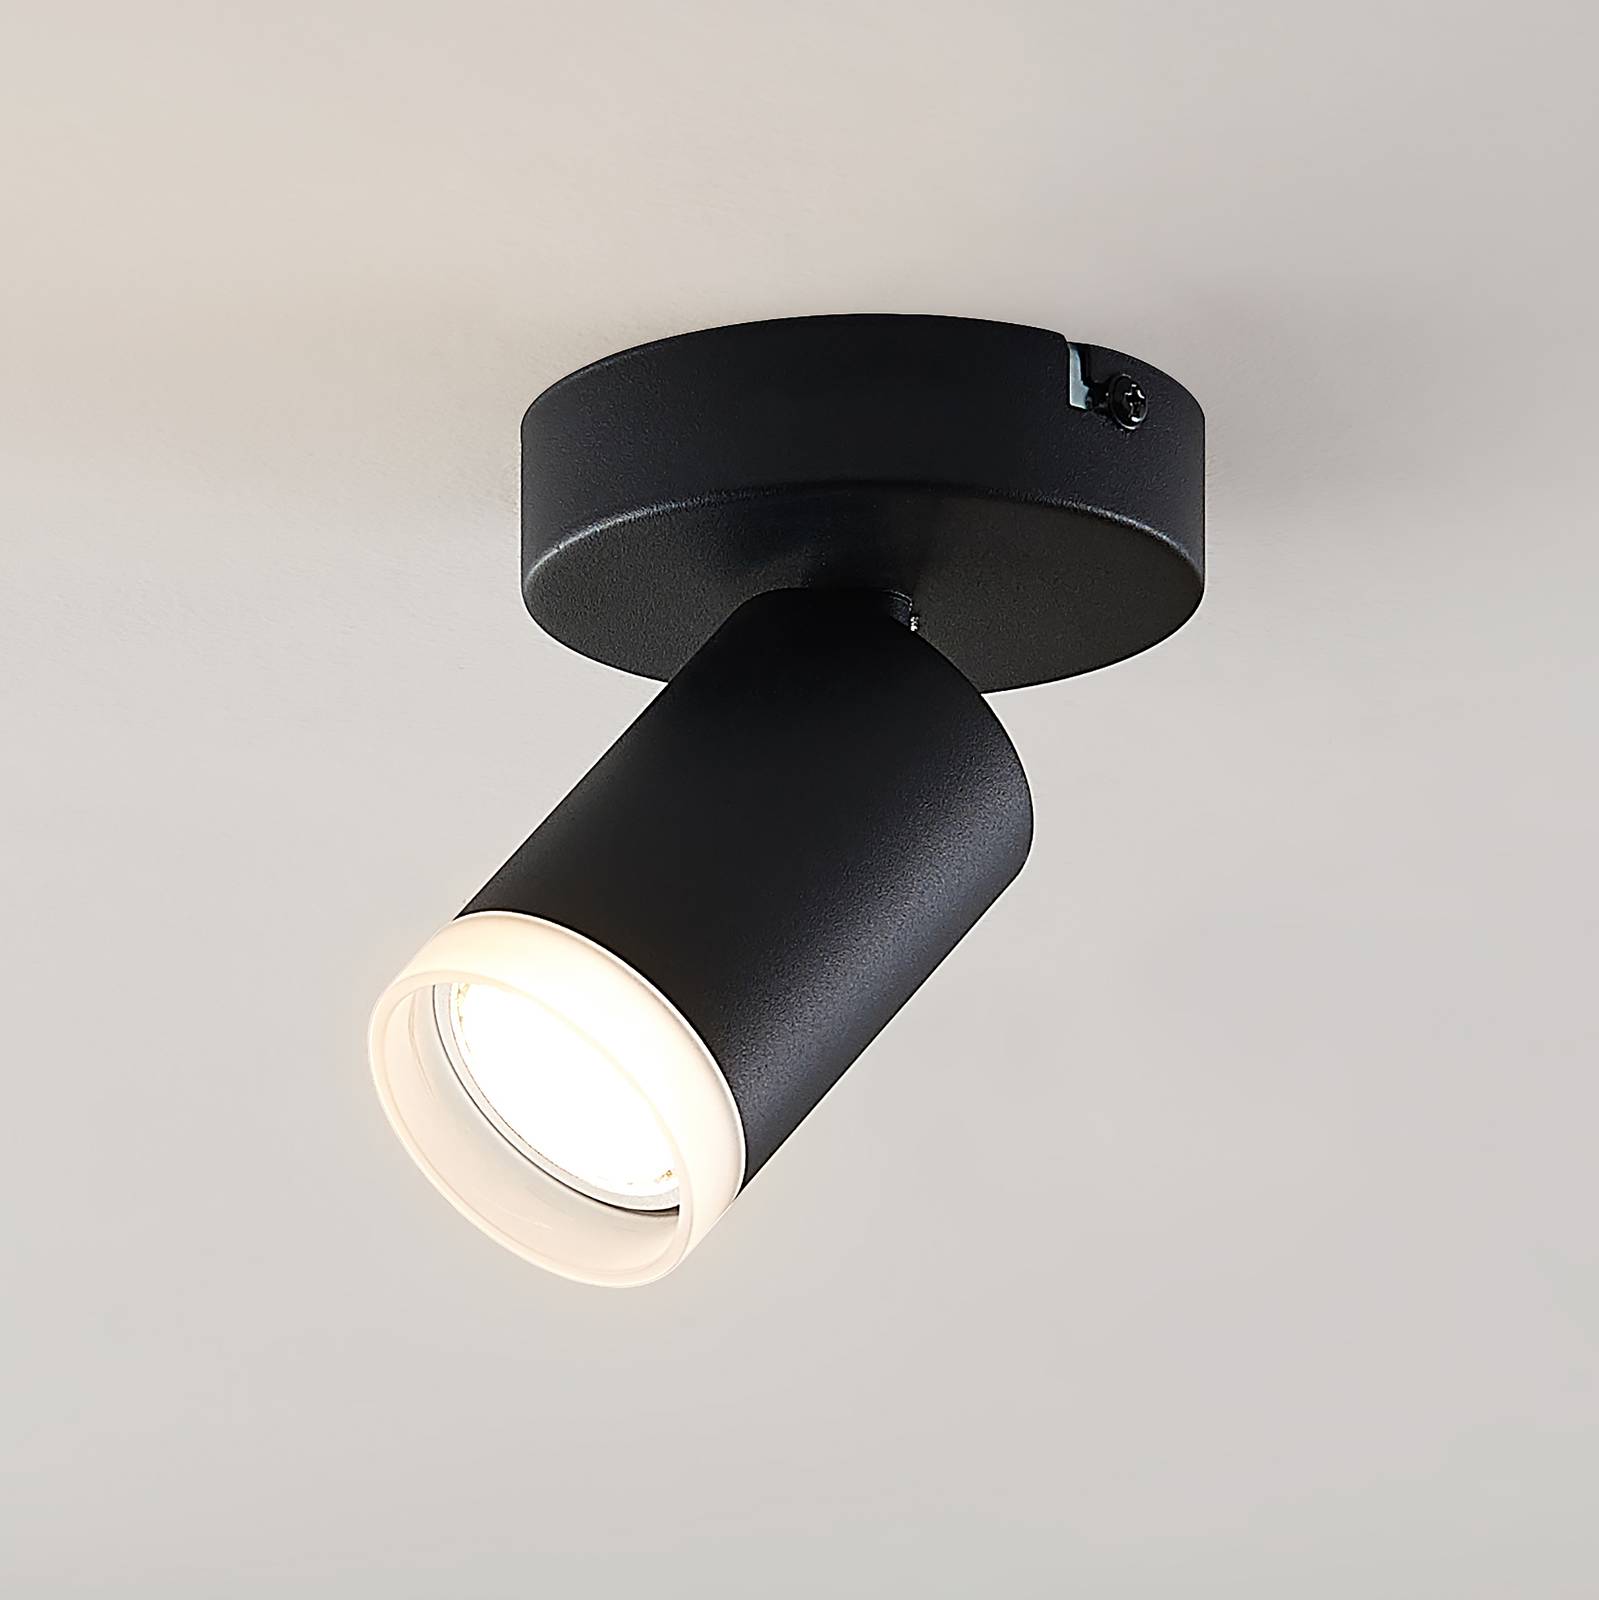 Arcchio Efilius spot plafond, rond, noir, 1 lampe